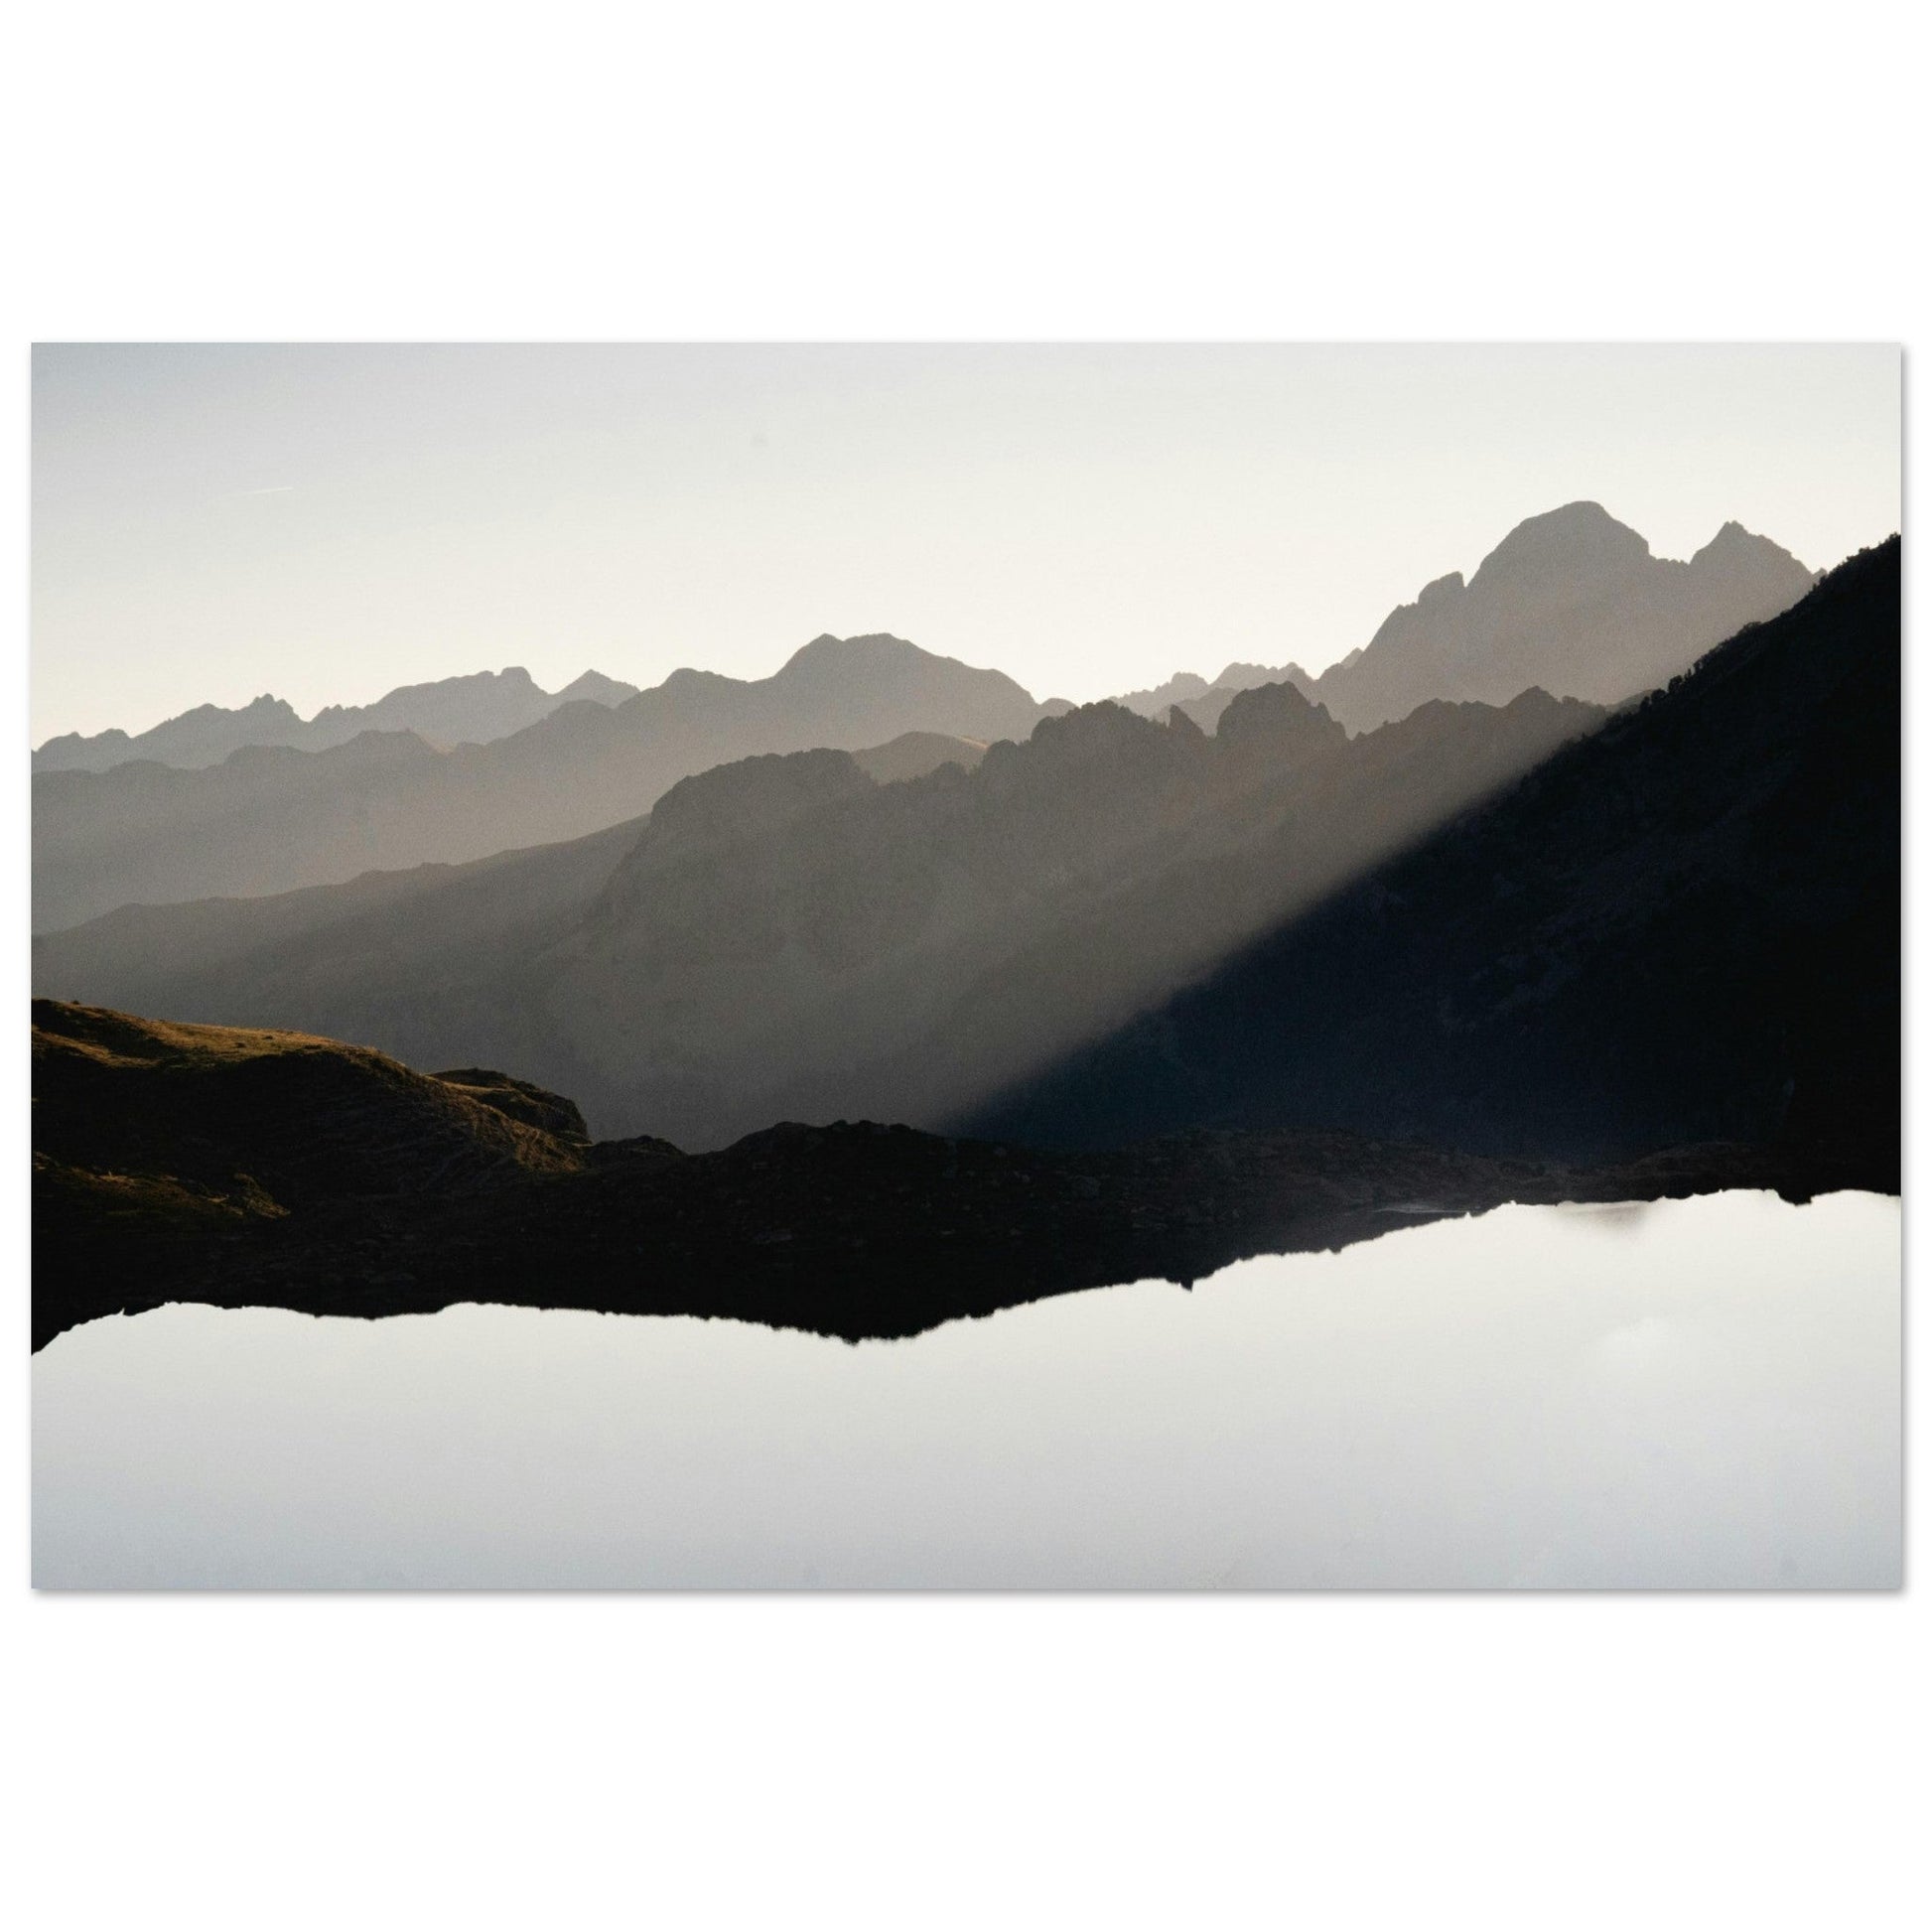 Vente Photo du lac et du Pic du Midi d'Ossau, Laruns, Pyrénées #3 - Tableau photo alu montagne